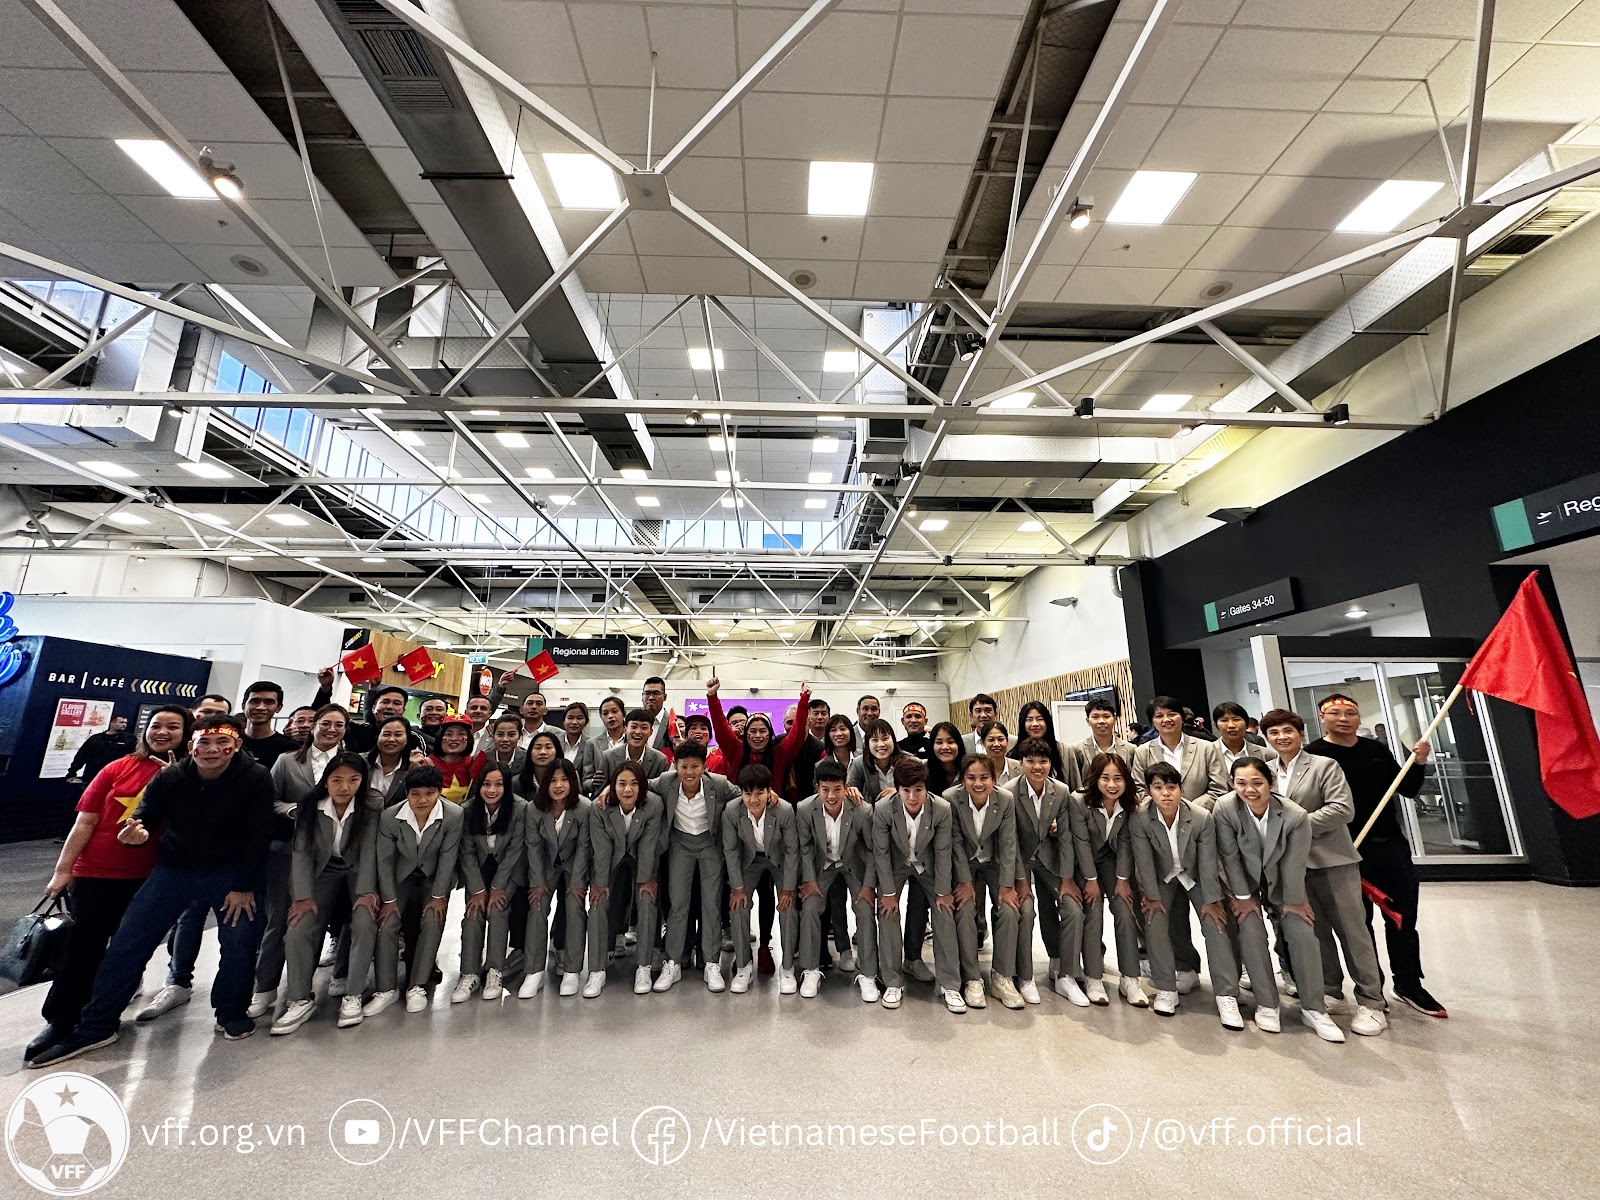 Đội tuyển nữ Việt Nam trở lại Auckland chuẩn bị đấu đội tuyển tốp 6 thế giới - Ảnh 2.